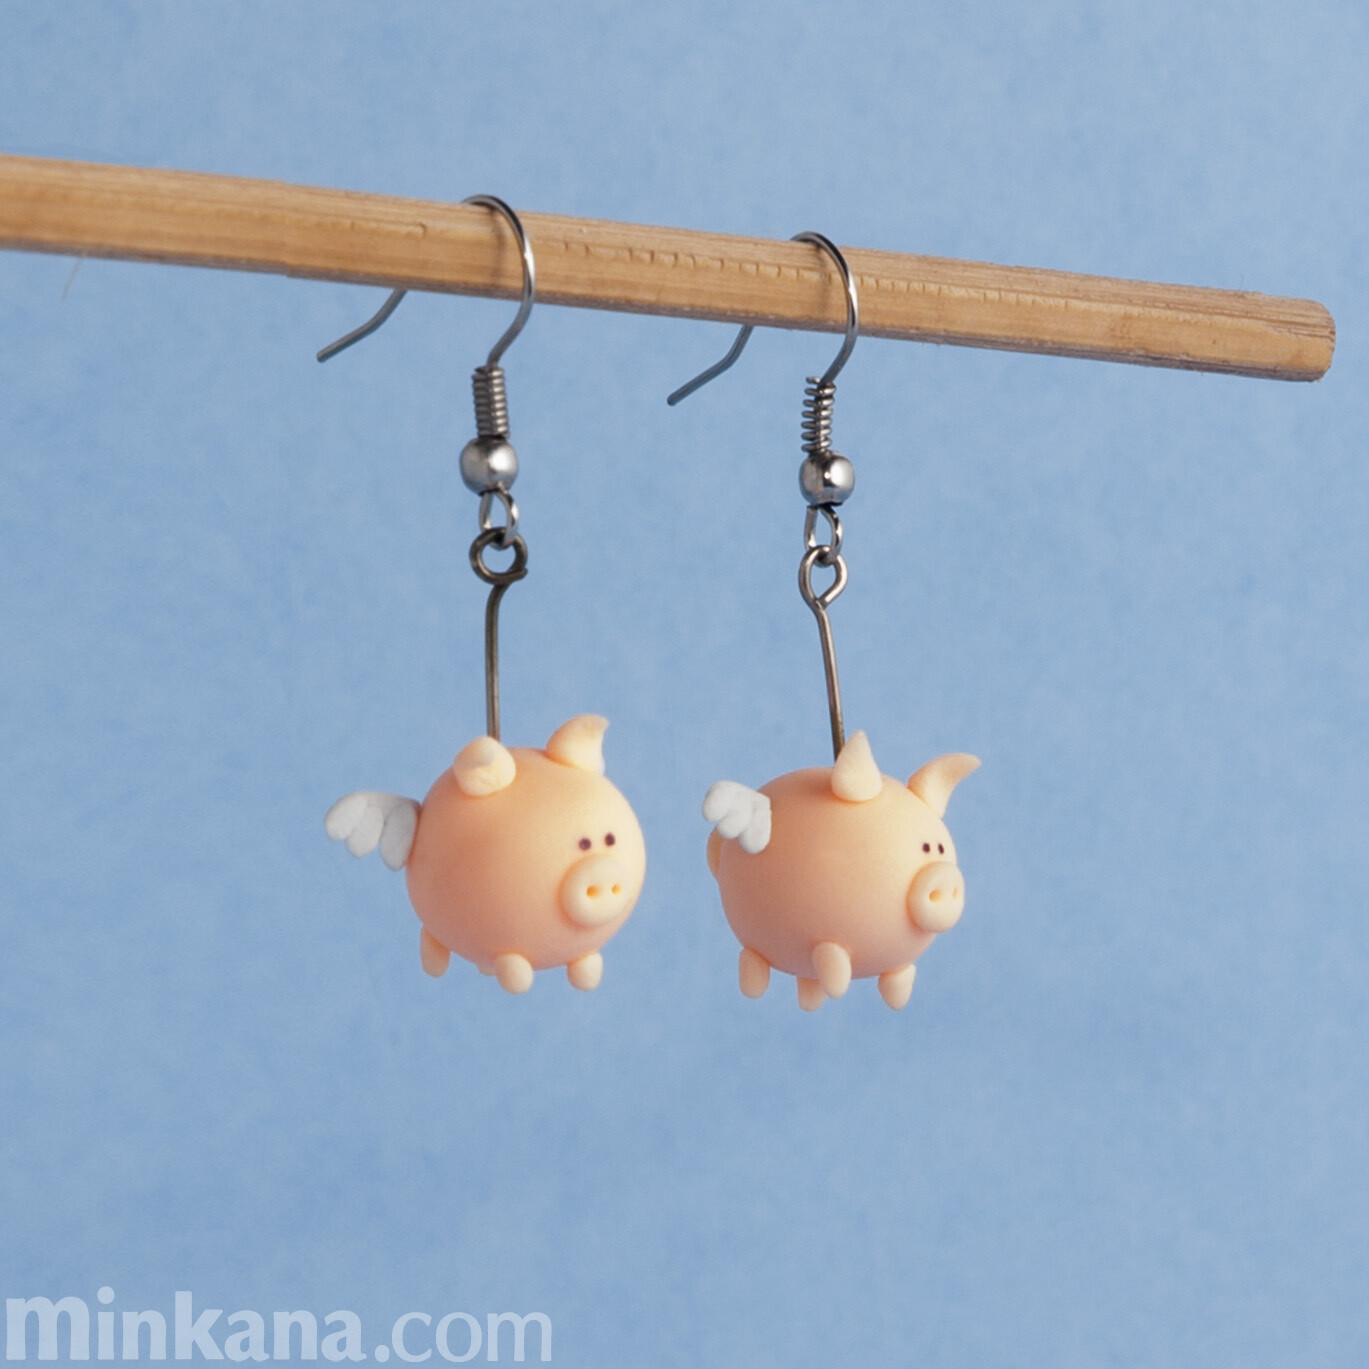 Flying Pigs Earrings